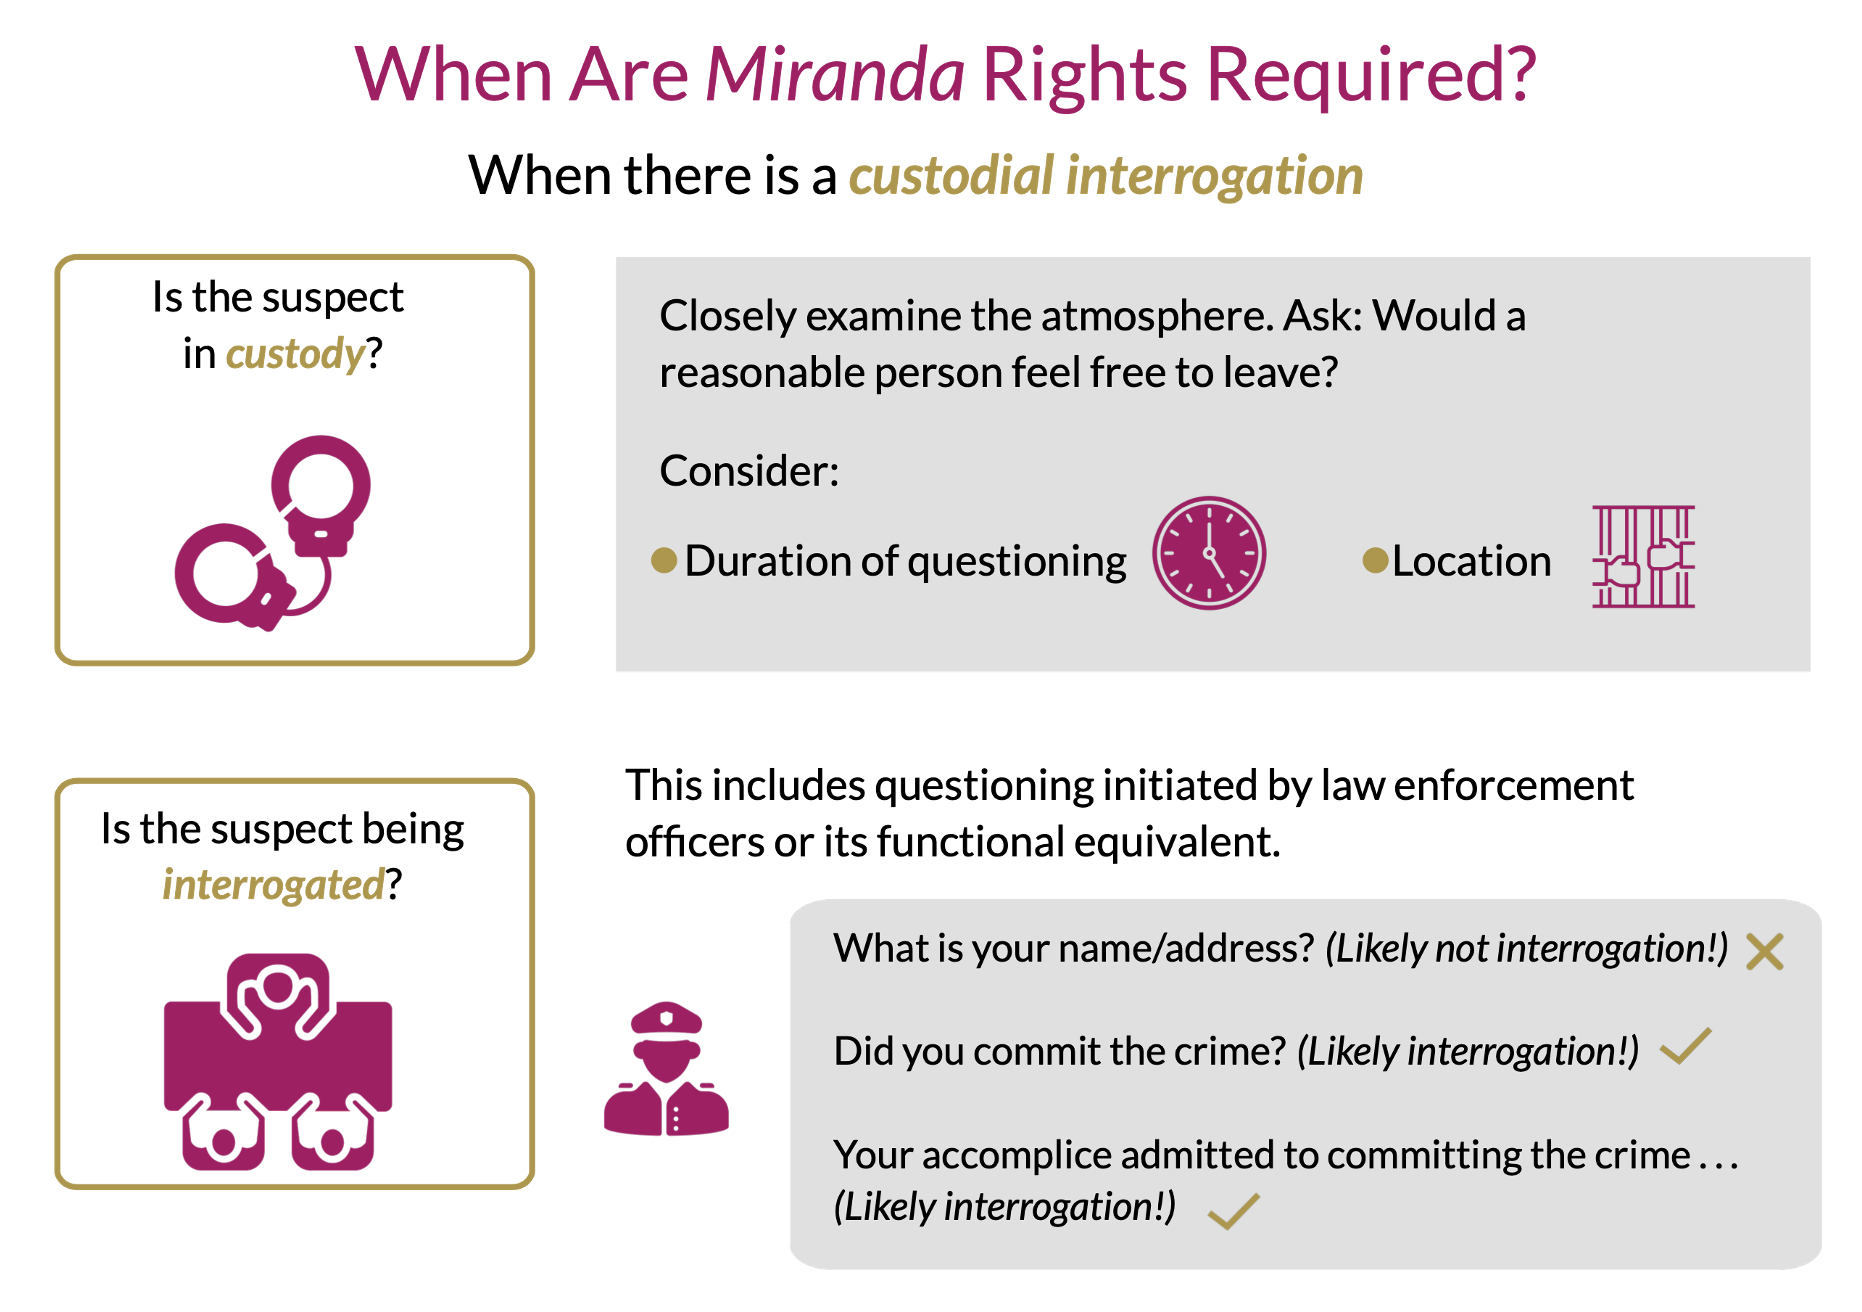 When are Miranda rights required